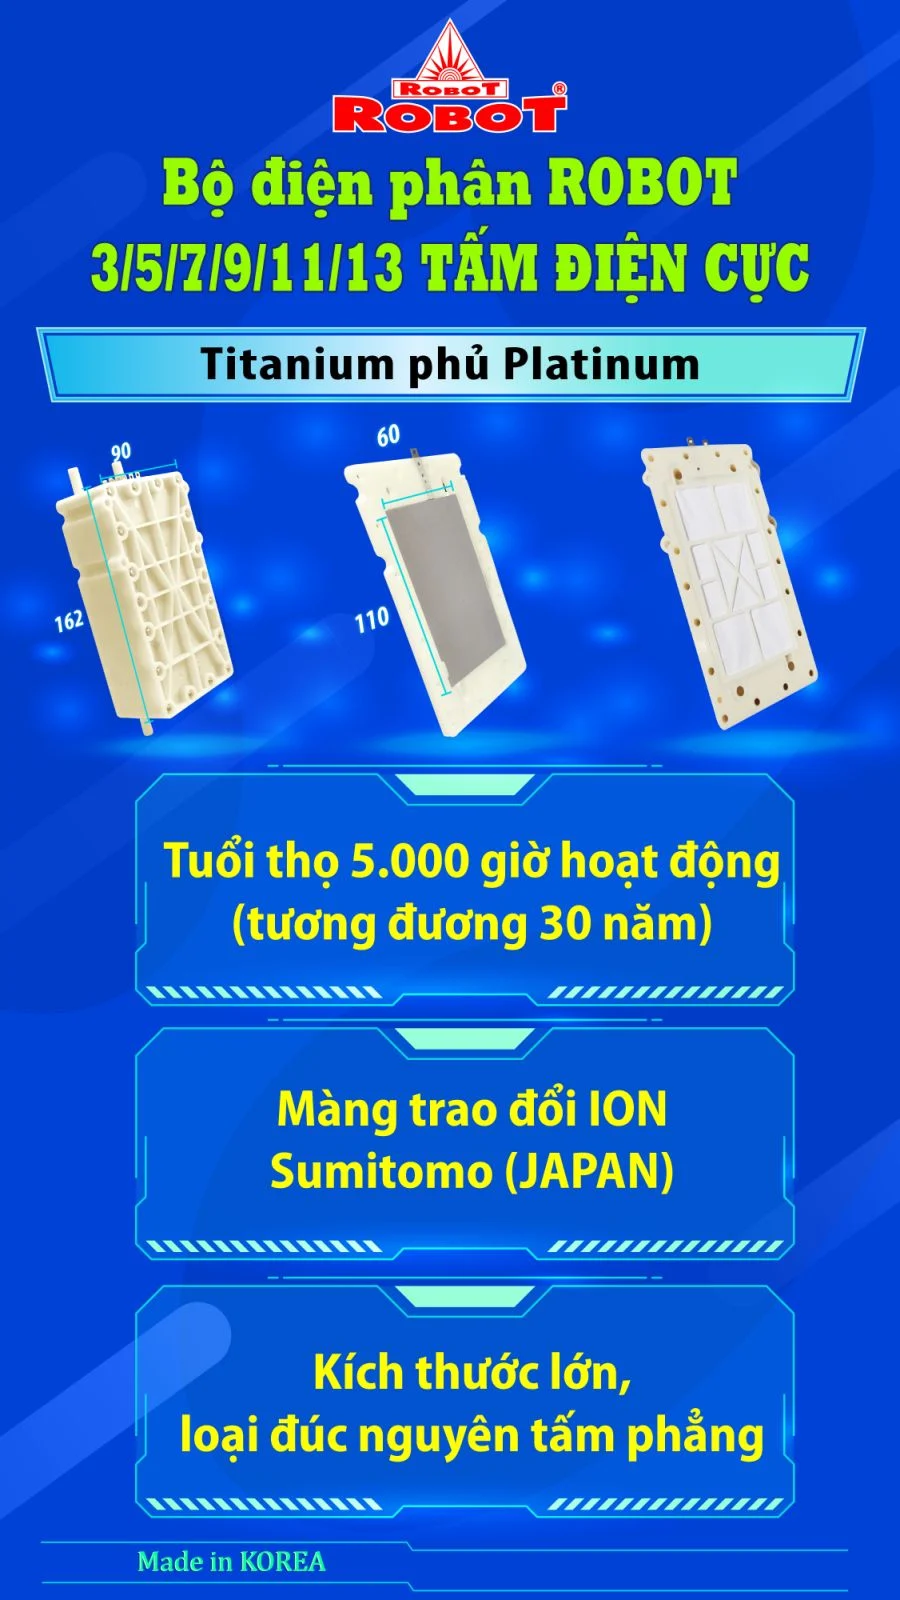 Bộ điện phân đến 3 tấm điện cực Titanium phủ Platinum của IONQUEEN 1314